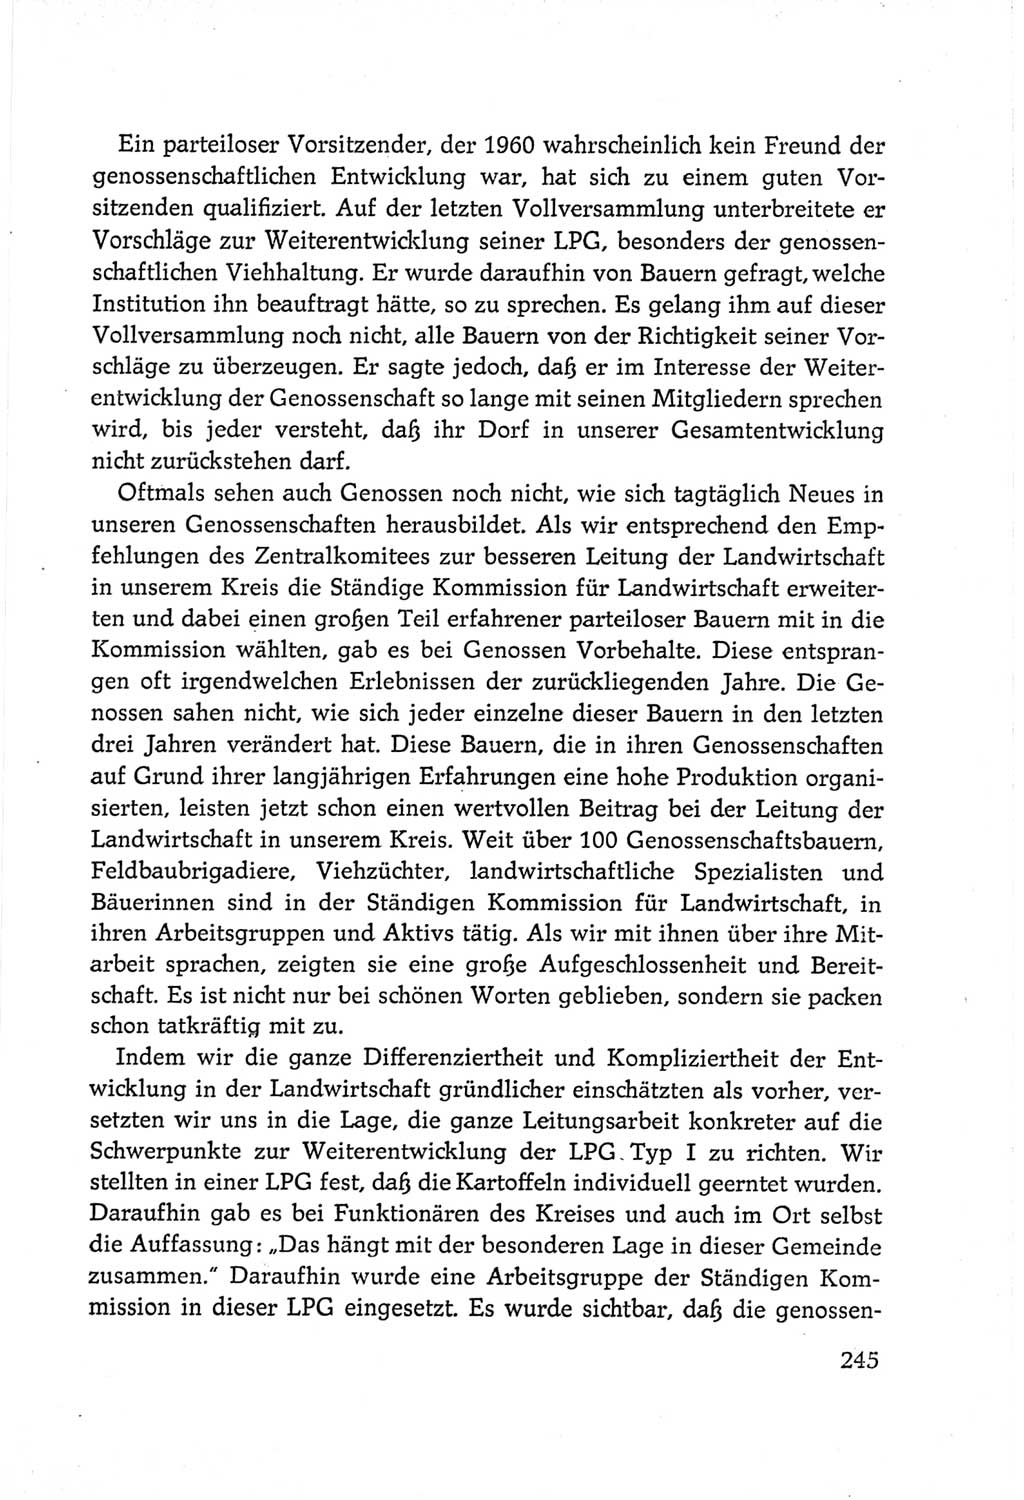 Protokoll der Verhandlungen des Ⅵ. Parteitages der Sozialistischen Einheitspartei Deutschlands (SED) [Deutsche Demokratische Republik (DDR)] 1963, Band Ⅲ, Seite 245 (Prot. Verh. Ⅵ. PT SED DDR 1963, Bd. Ⅲ, S. 245)